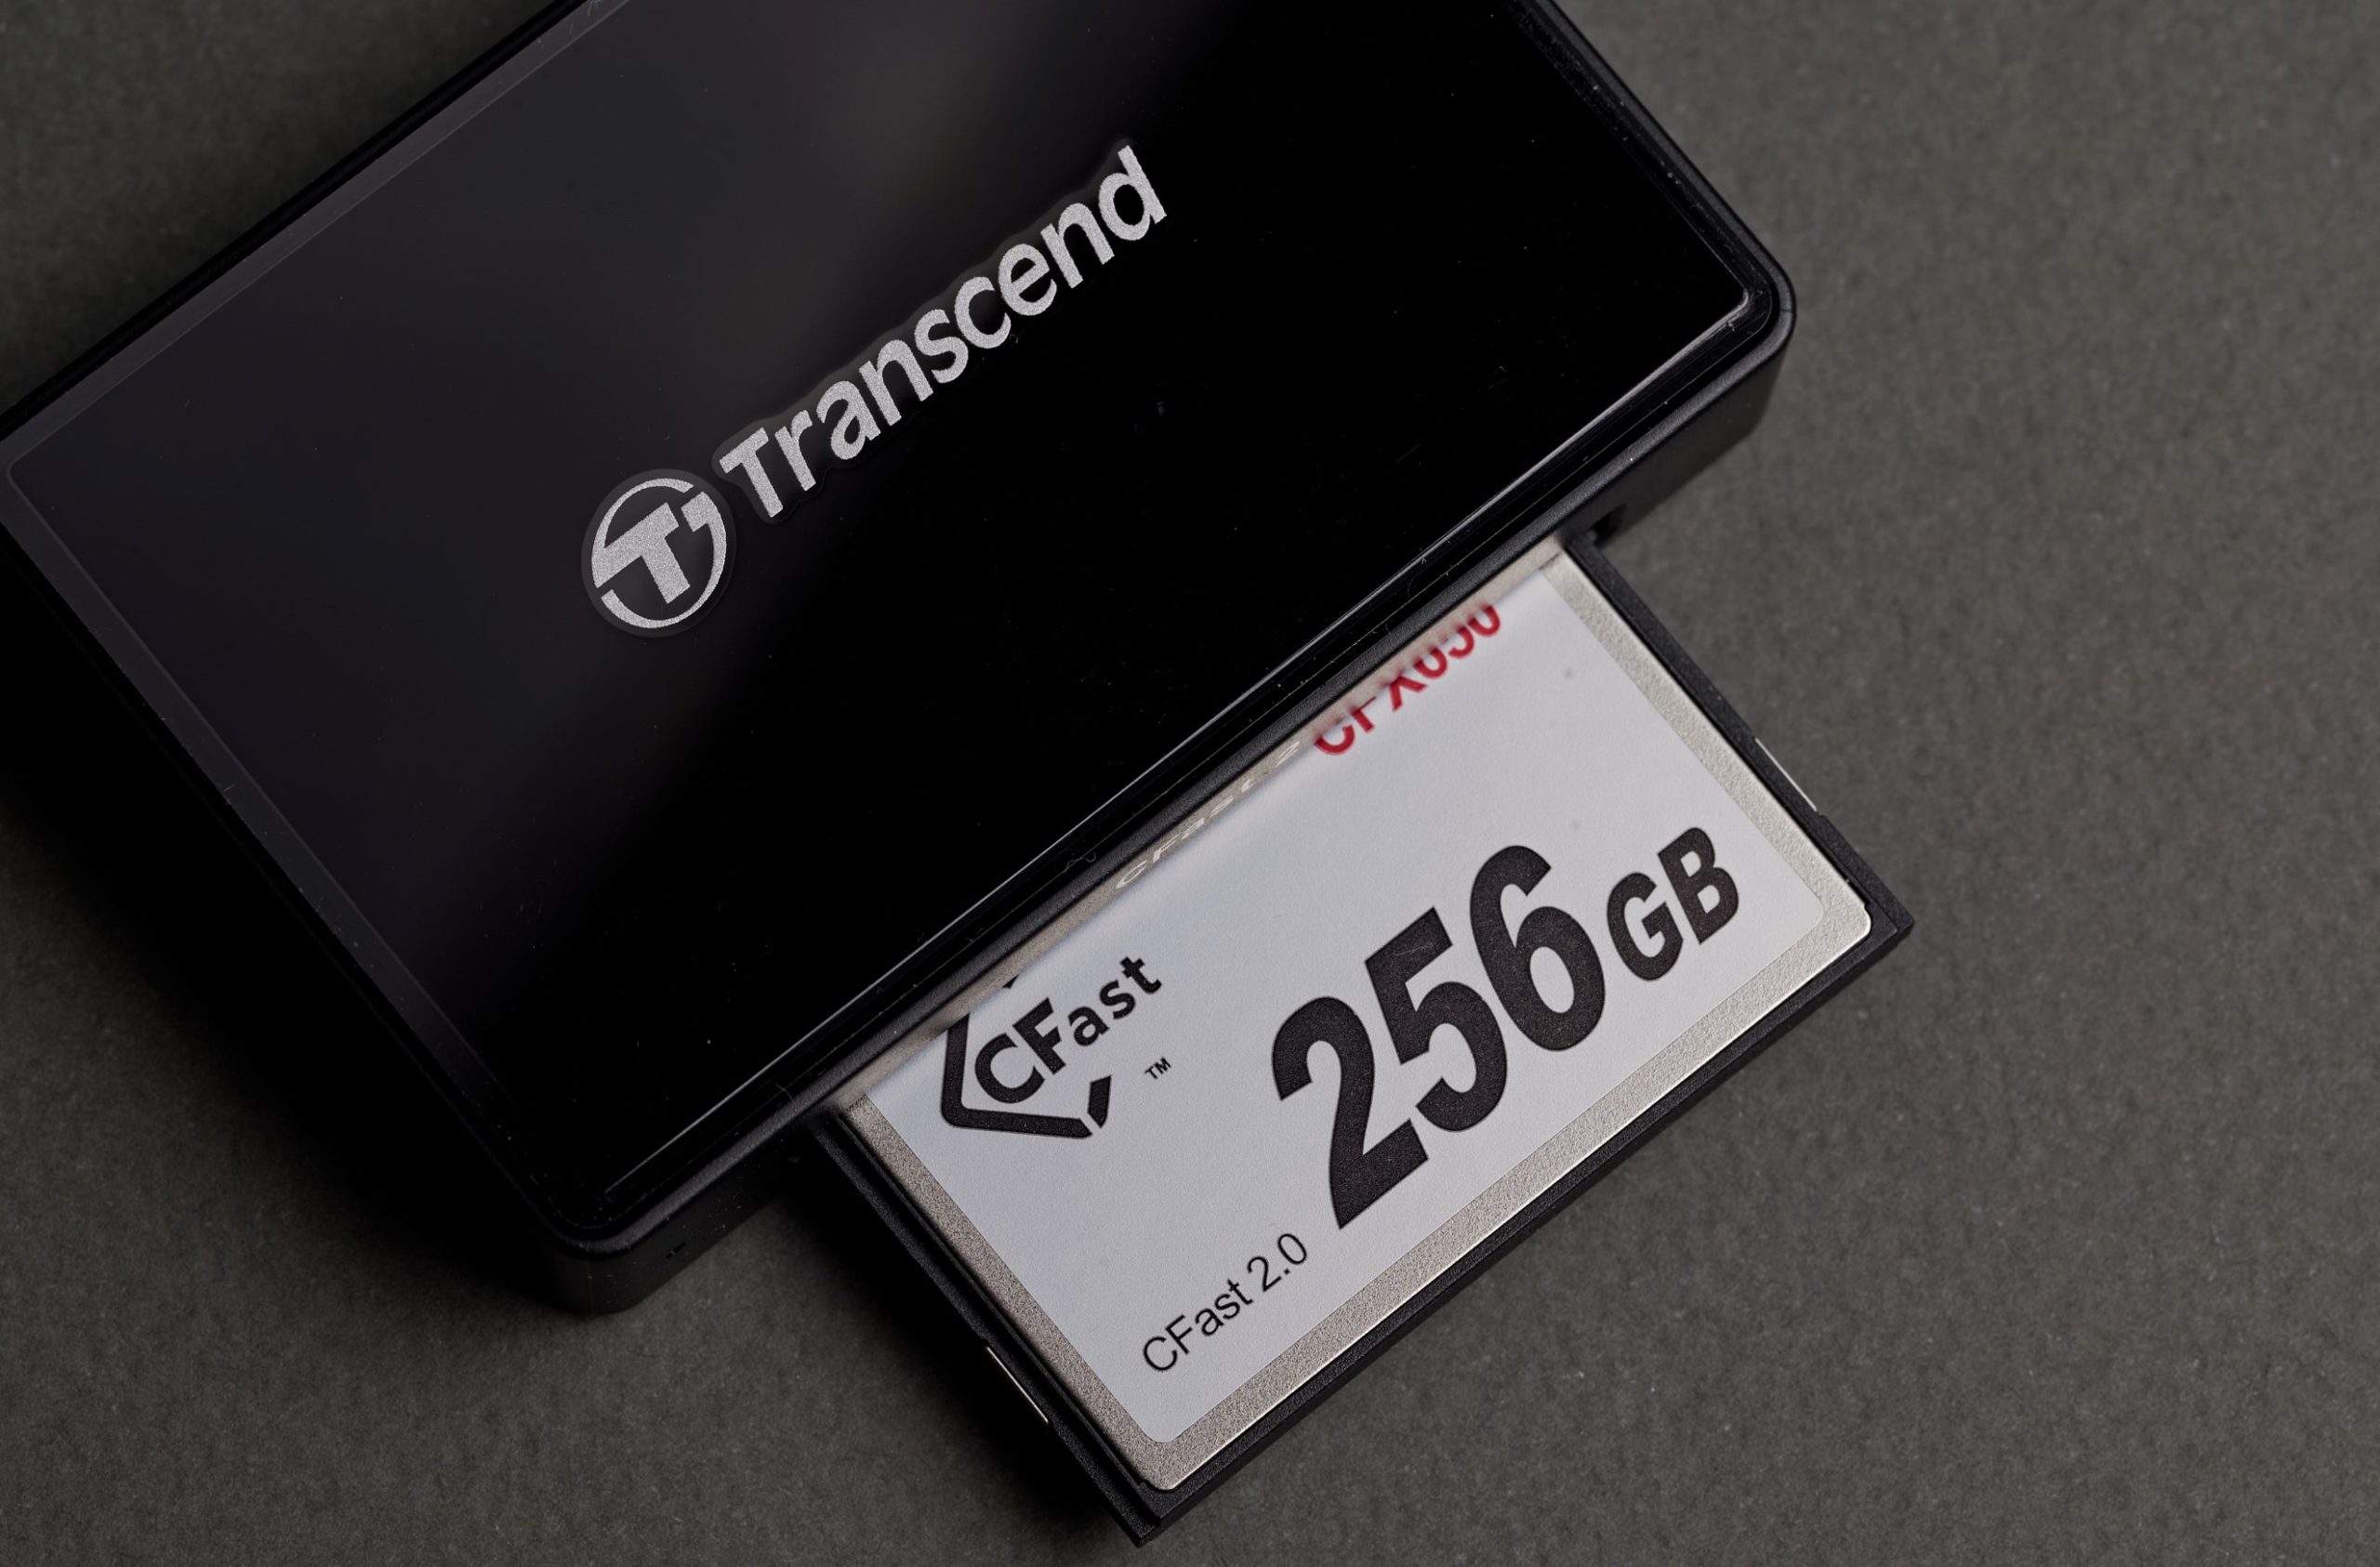 Обзор Transcend CFX650. Cамая доступная карта-памяти для кинокамер